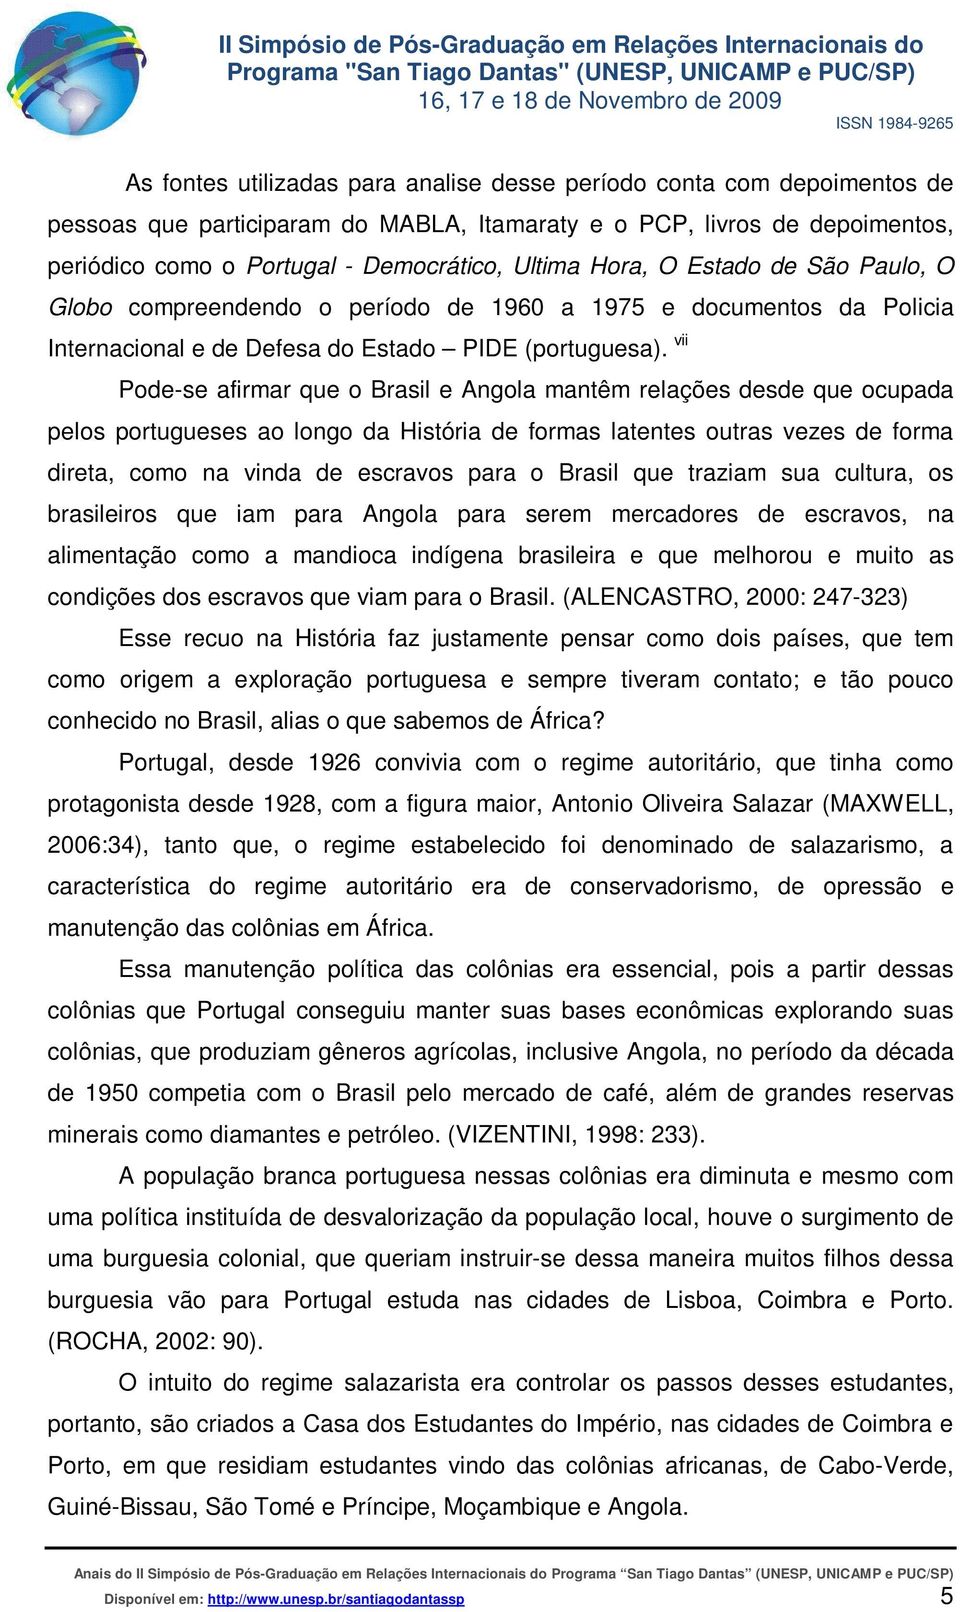 vii Pode-se afirmar que o Brasil e Angola mantêm relações desde que ocupada pelos portugueses ao longo da História de formas latentes outras vezes de forma direta, como na vinda de escravos para o